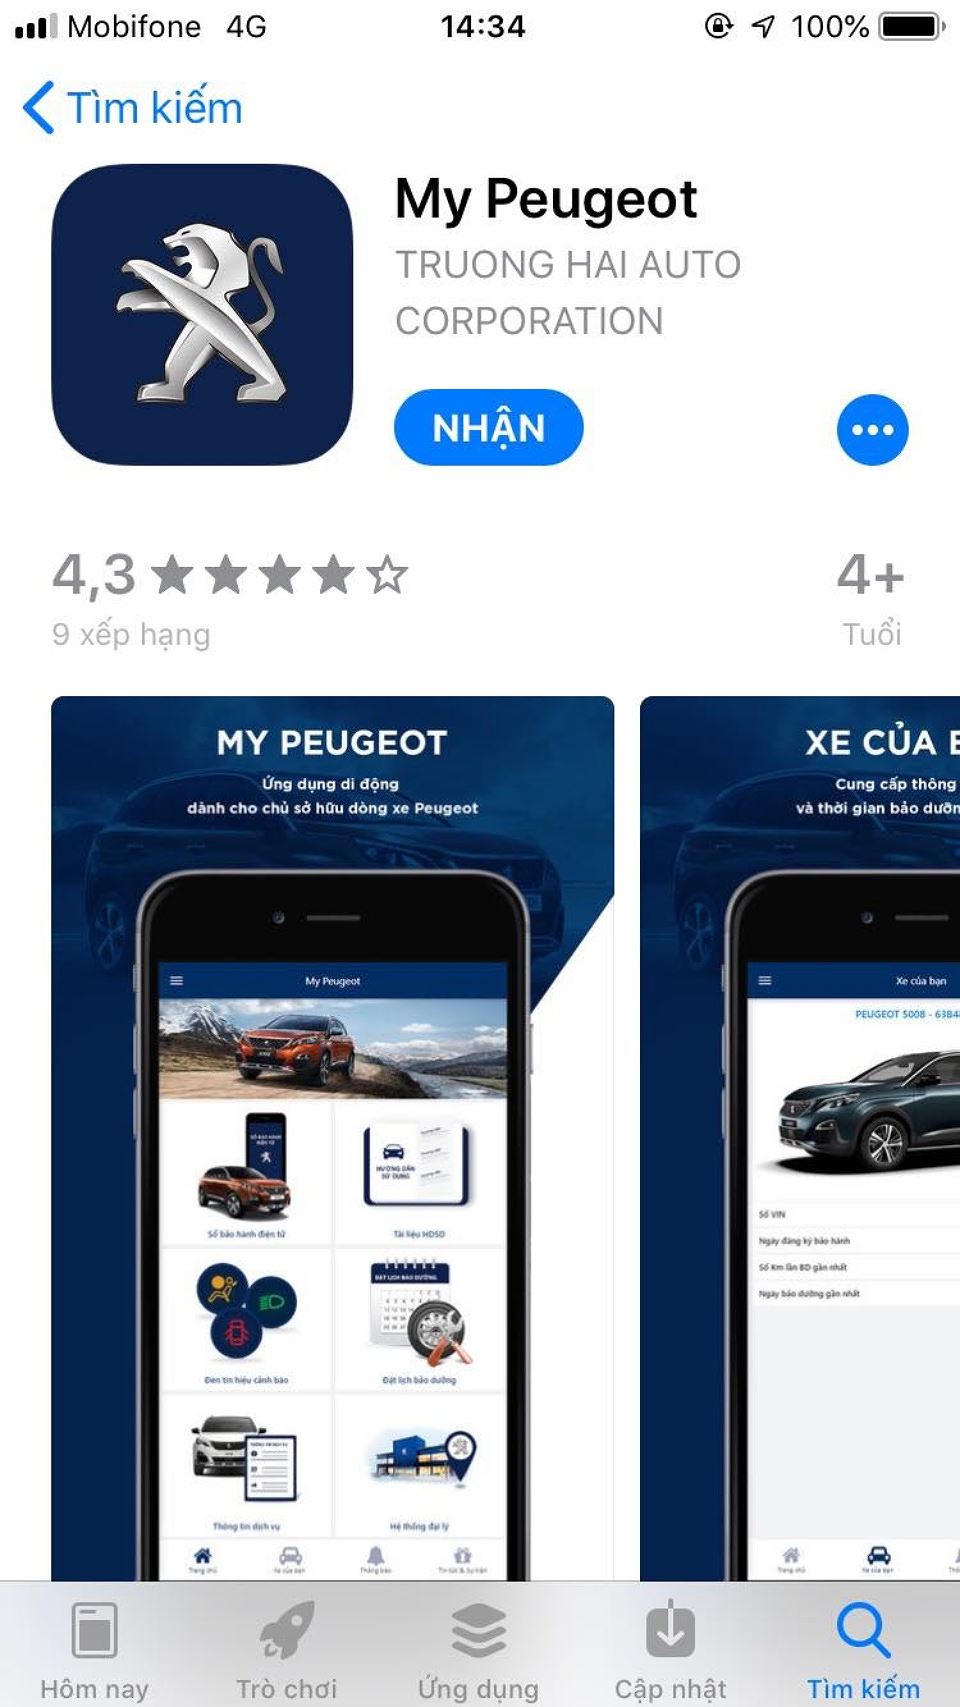 Cách dùng ứng dụng "My Peugeot" của Thaco để đặt lịch bảo dưỡng xe 3a